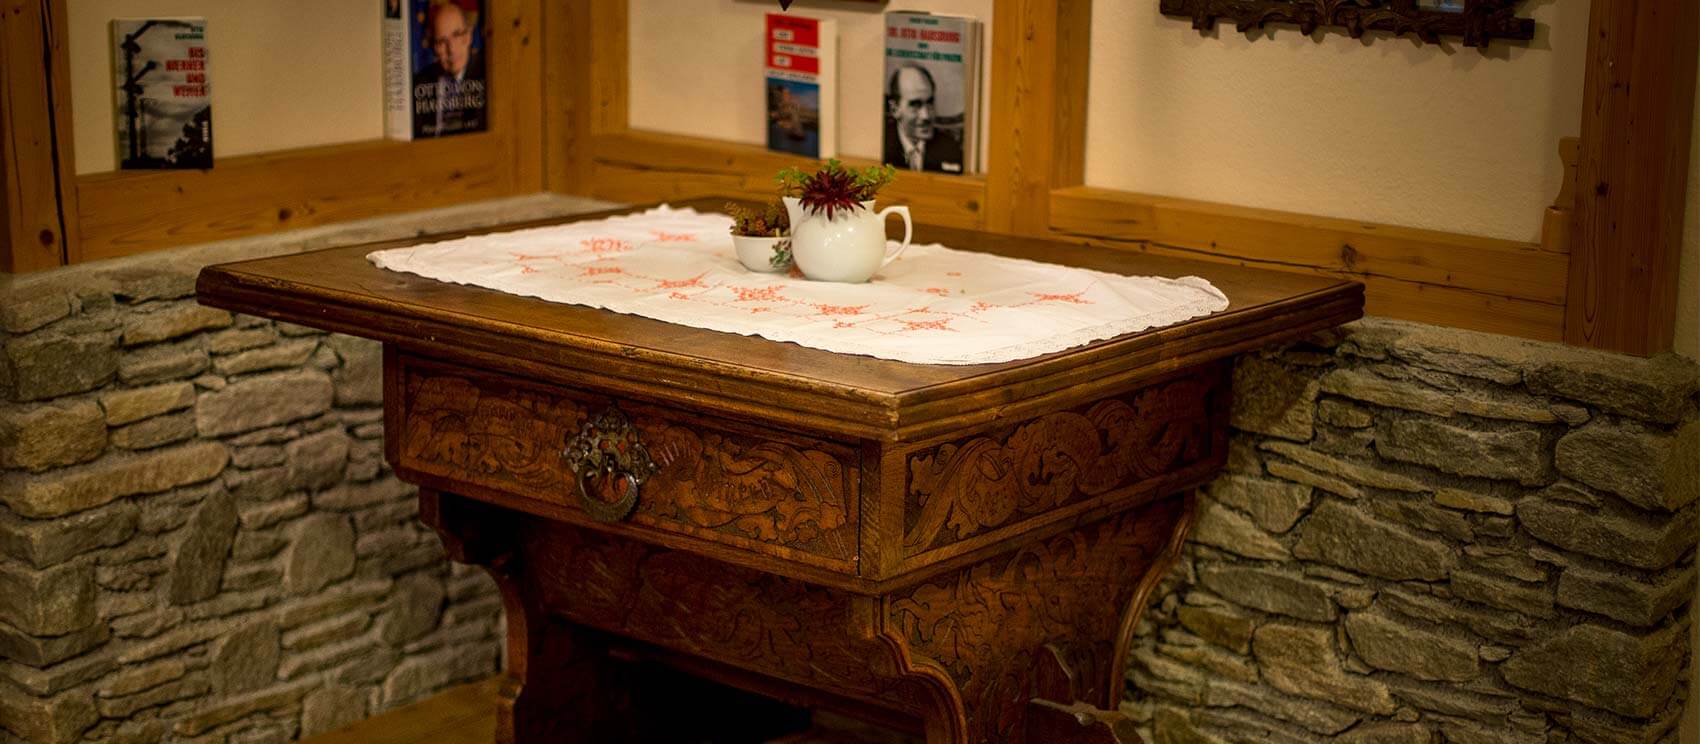 Der Kaisertisch im Gasthof Orthofer - der untere Bereich ist mit Schnitzereien versehen.